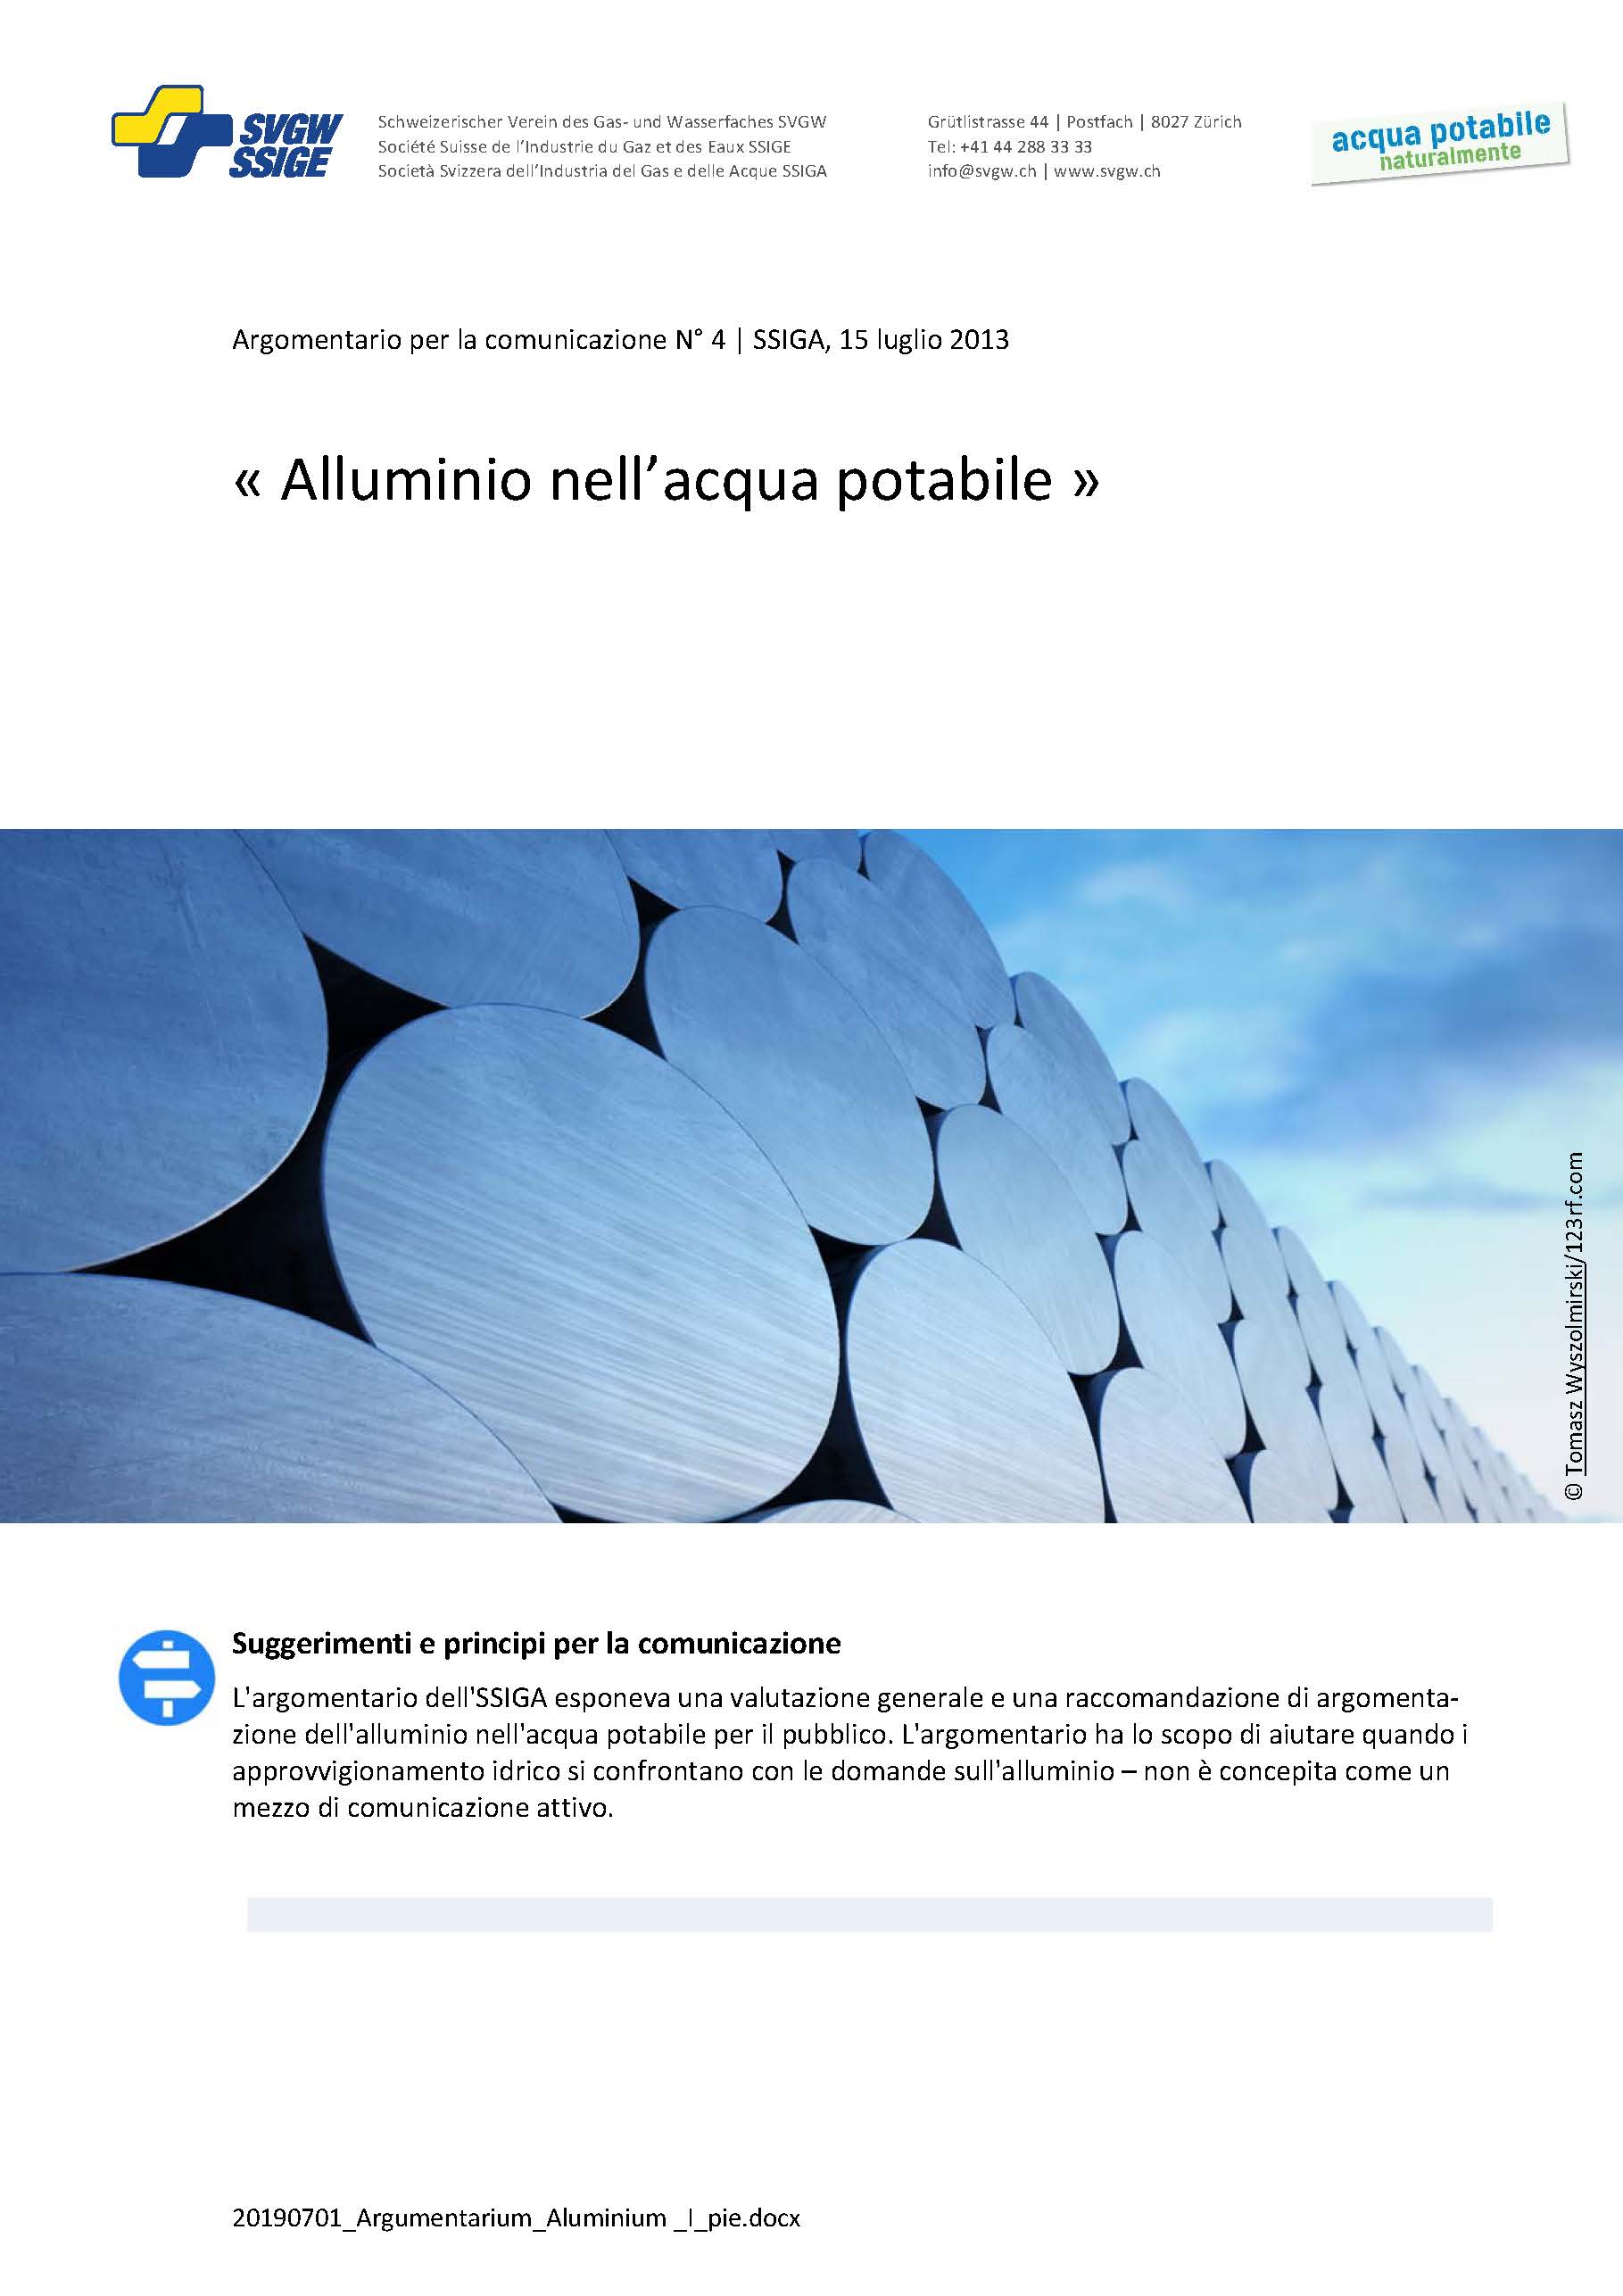 Argomentazione: «Alluminio nell'acqua potabile»